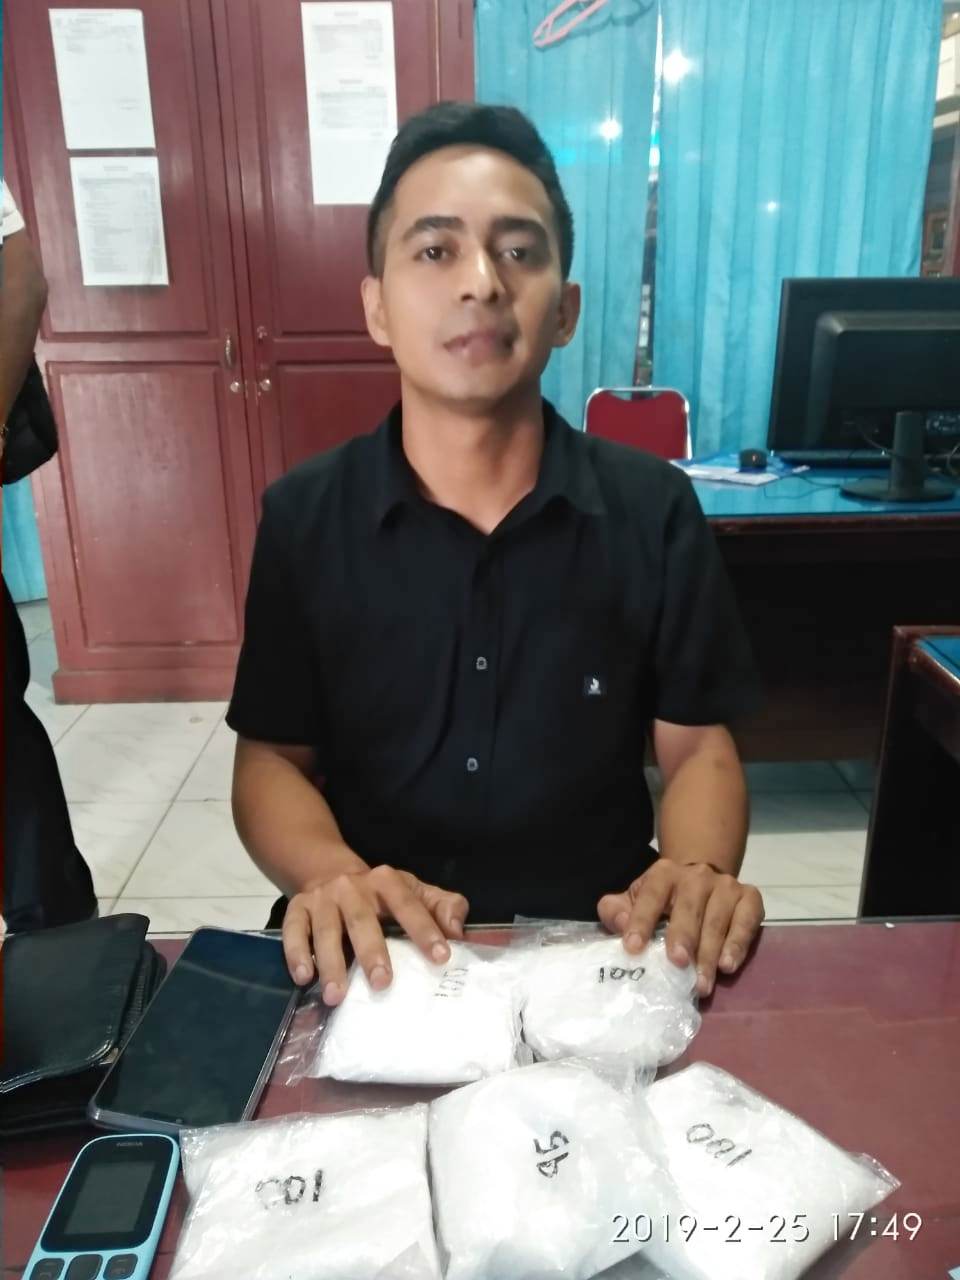 Simpan 500 Gram Sabu Di Dalam Sepatu, Pria Asal Aceh Ditangkap BNNP